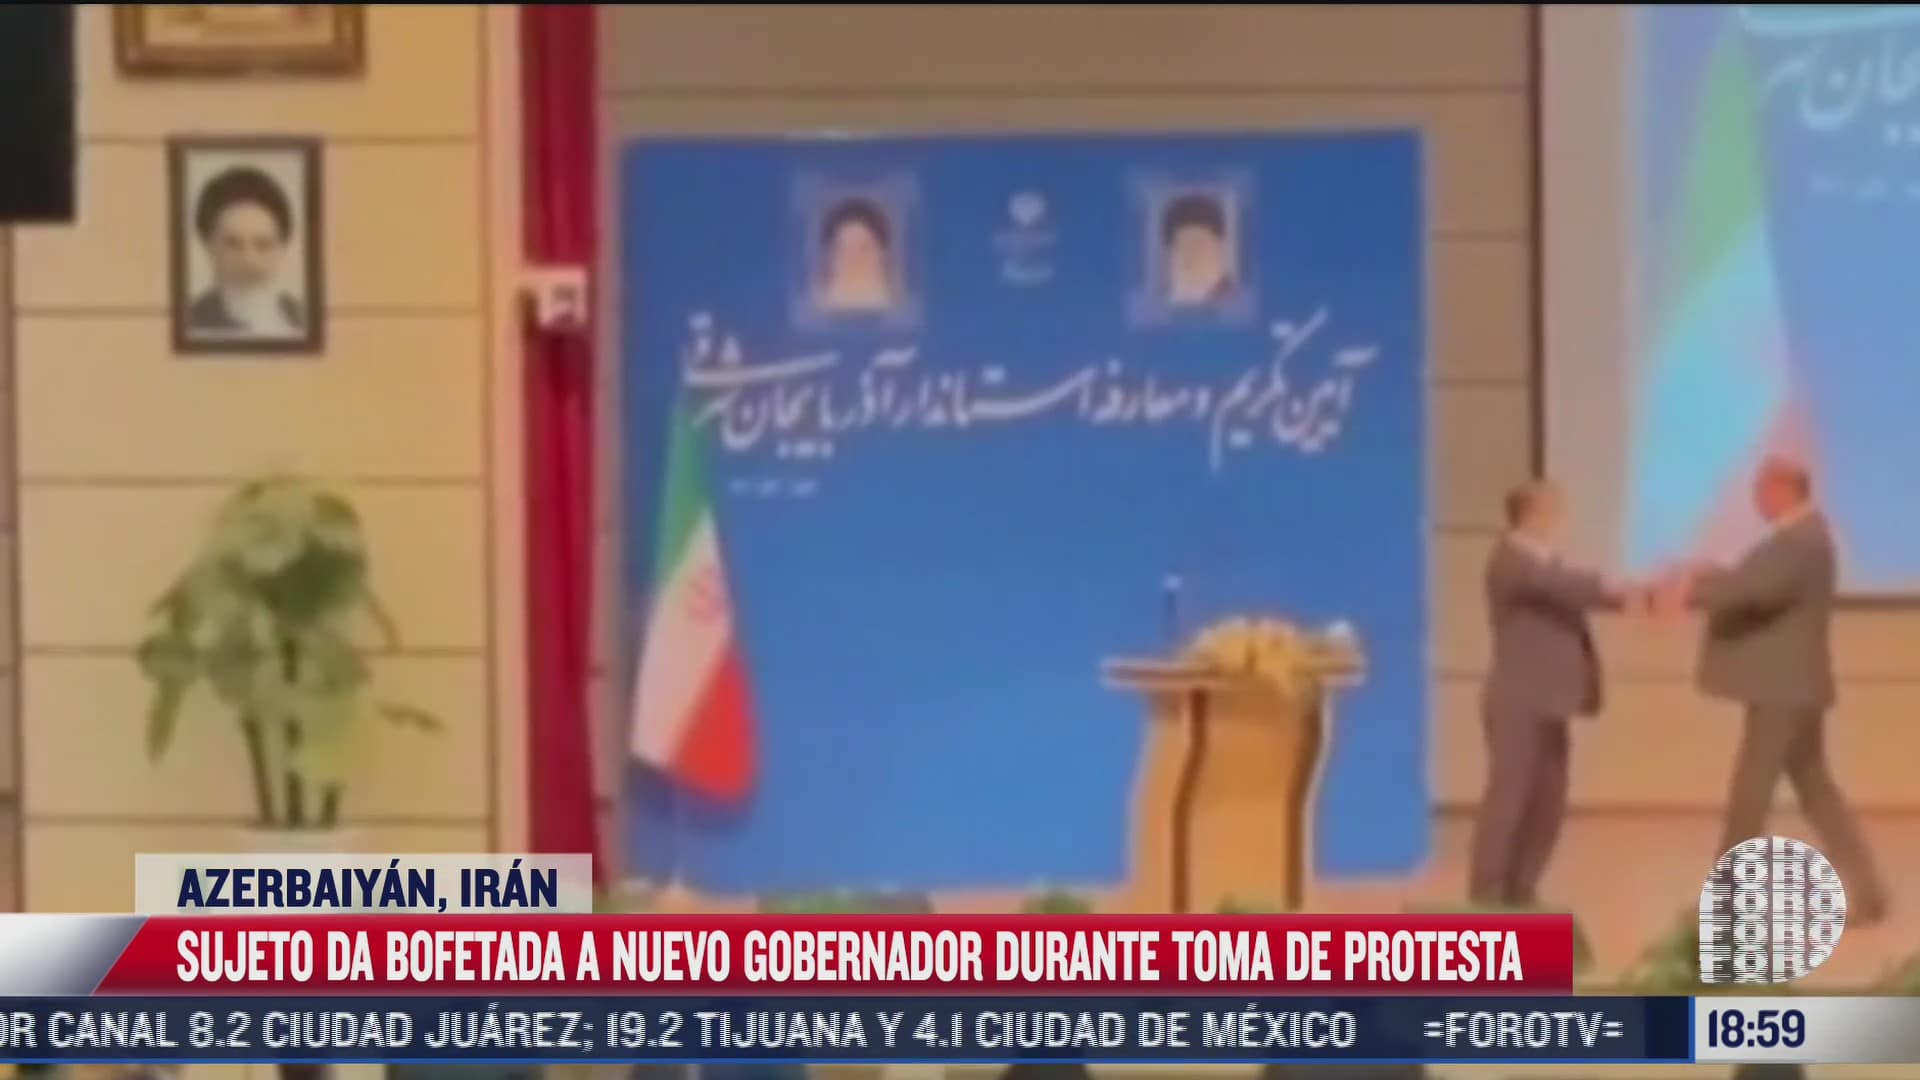 sujeto da bofetada a nuevo gobernador en iran